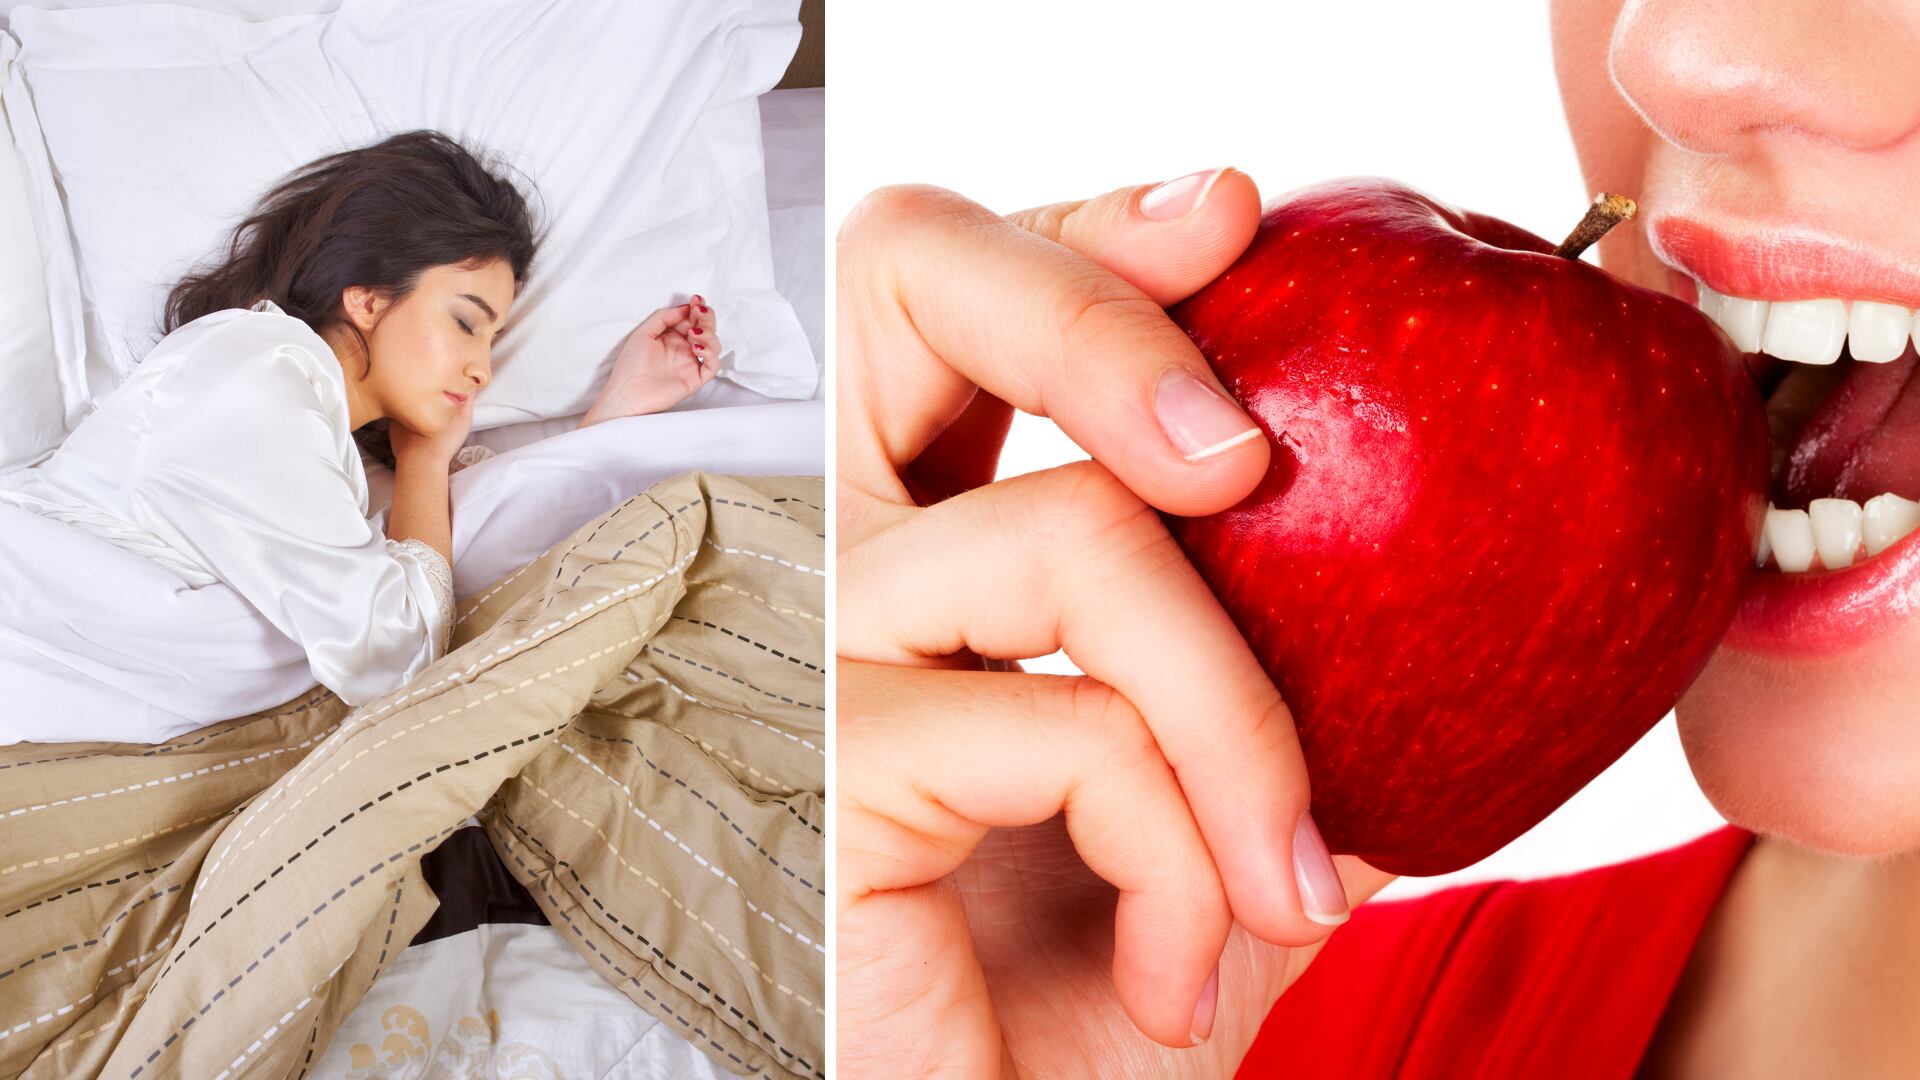 Comer manzana antes de dormir ayuda a reducir el apetito y mejora la salud gracias a su contenido de fibra y nutrientes esenciales.